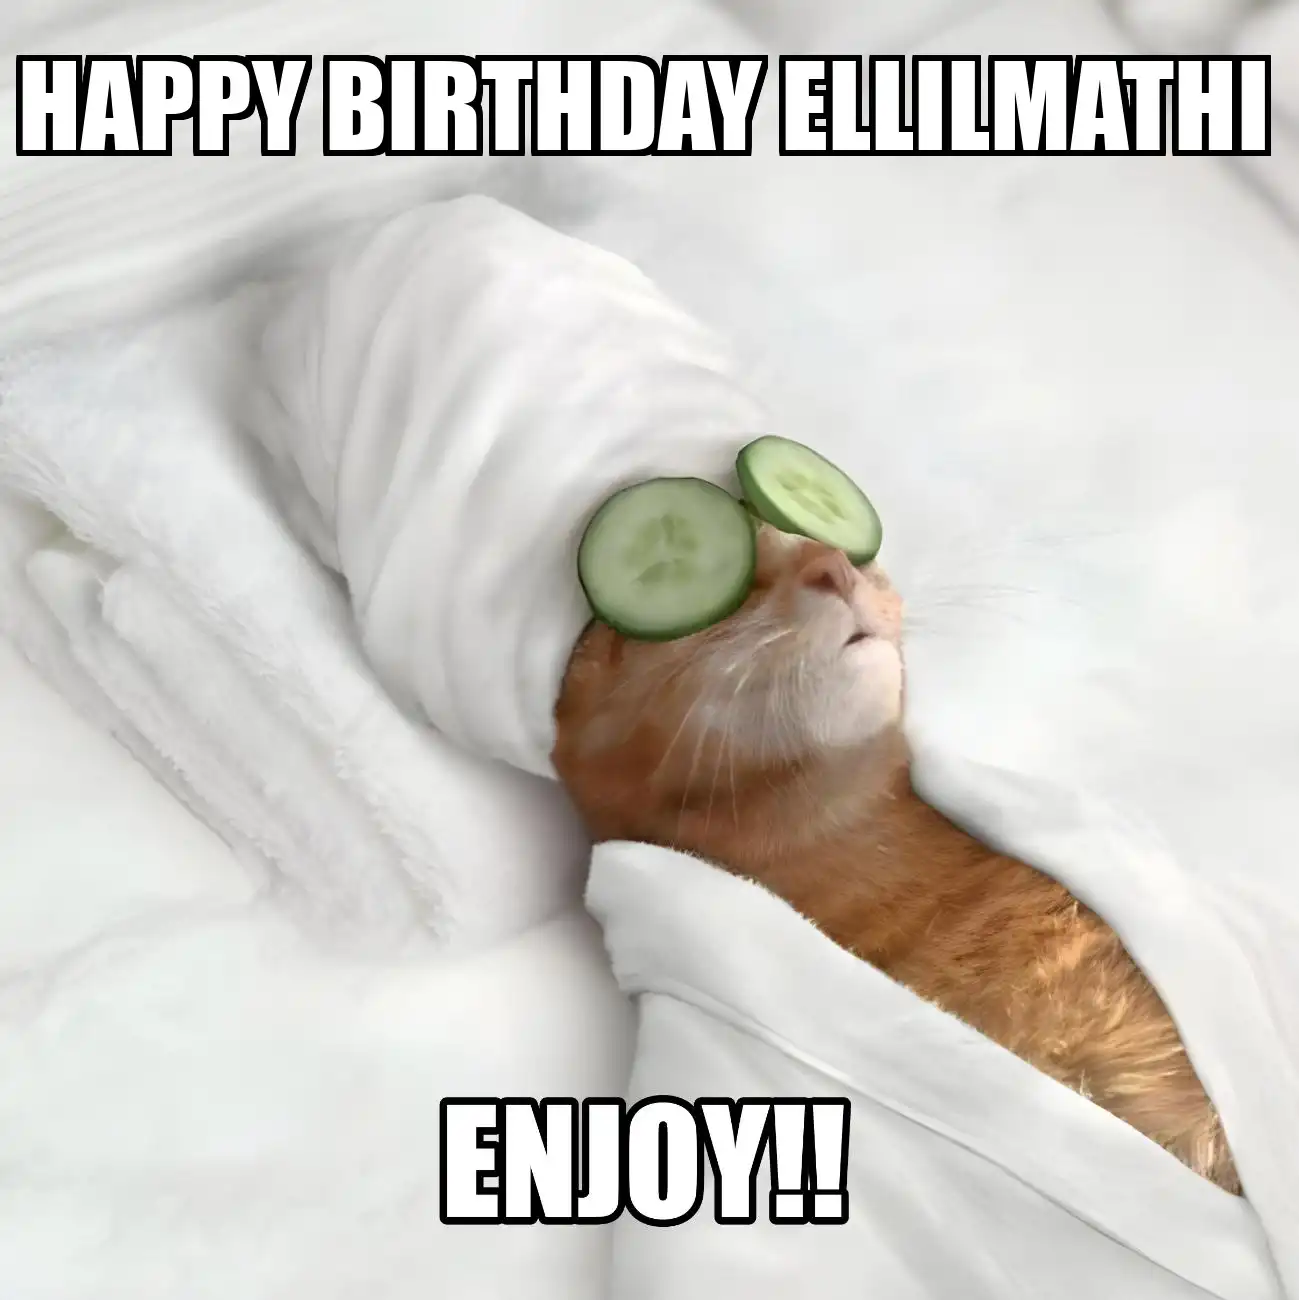 Happy Birthday Ellilmathi Enjoy Cat Meme